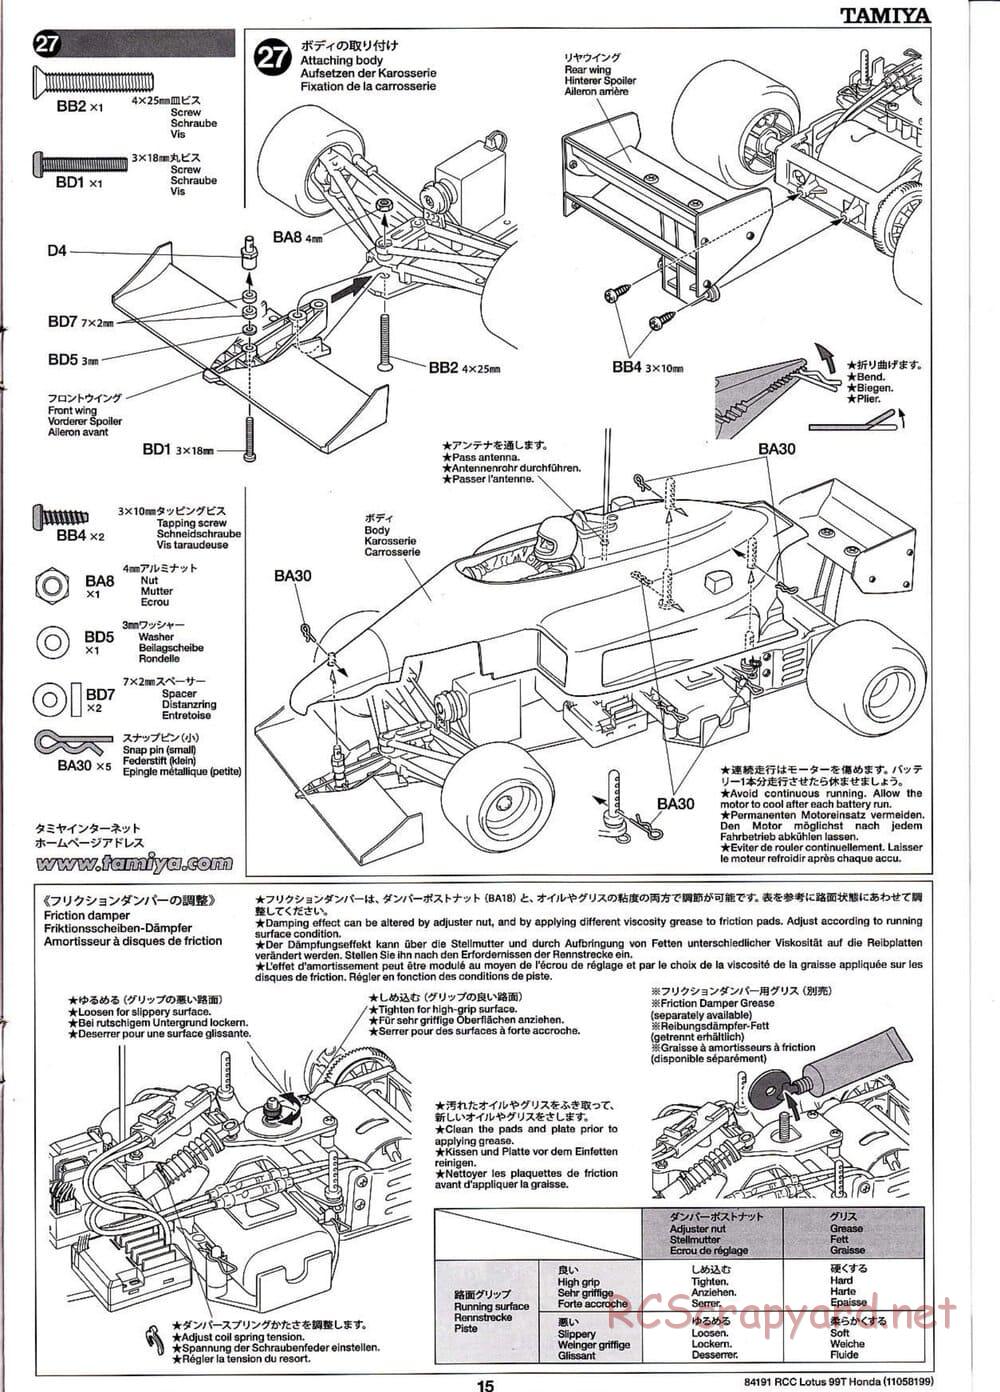 Tamiya - Team Lotus 99T Honda - F103 Chassis - Manual - Page 15